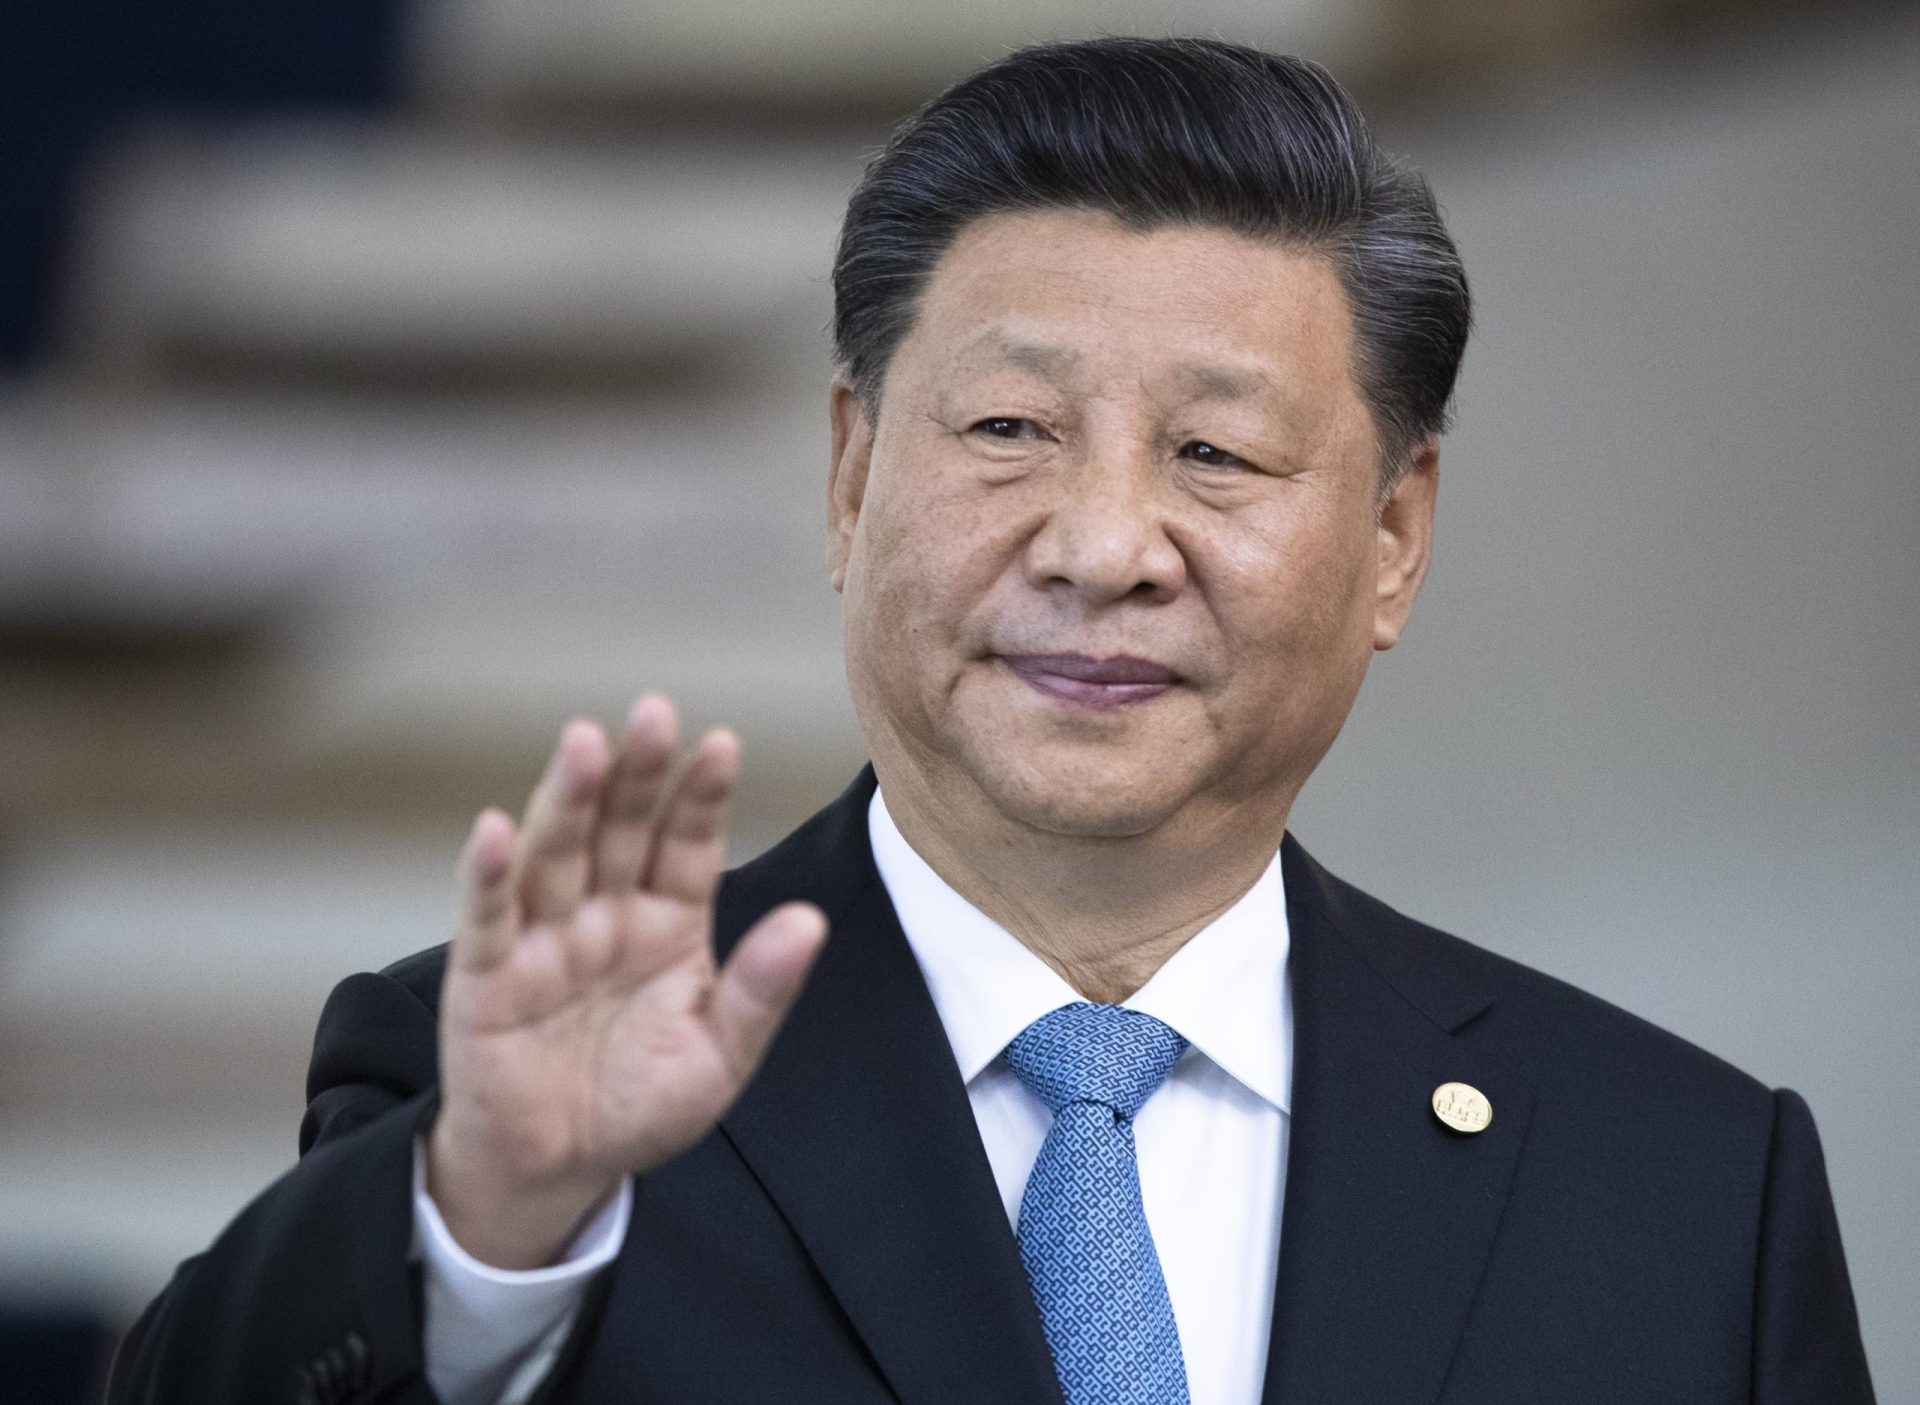 EXPLICATOR: ¿Por qué es importante el viaje a Asia Central de Xi Jinping?